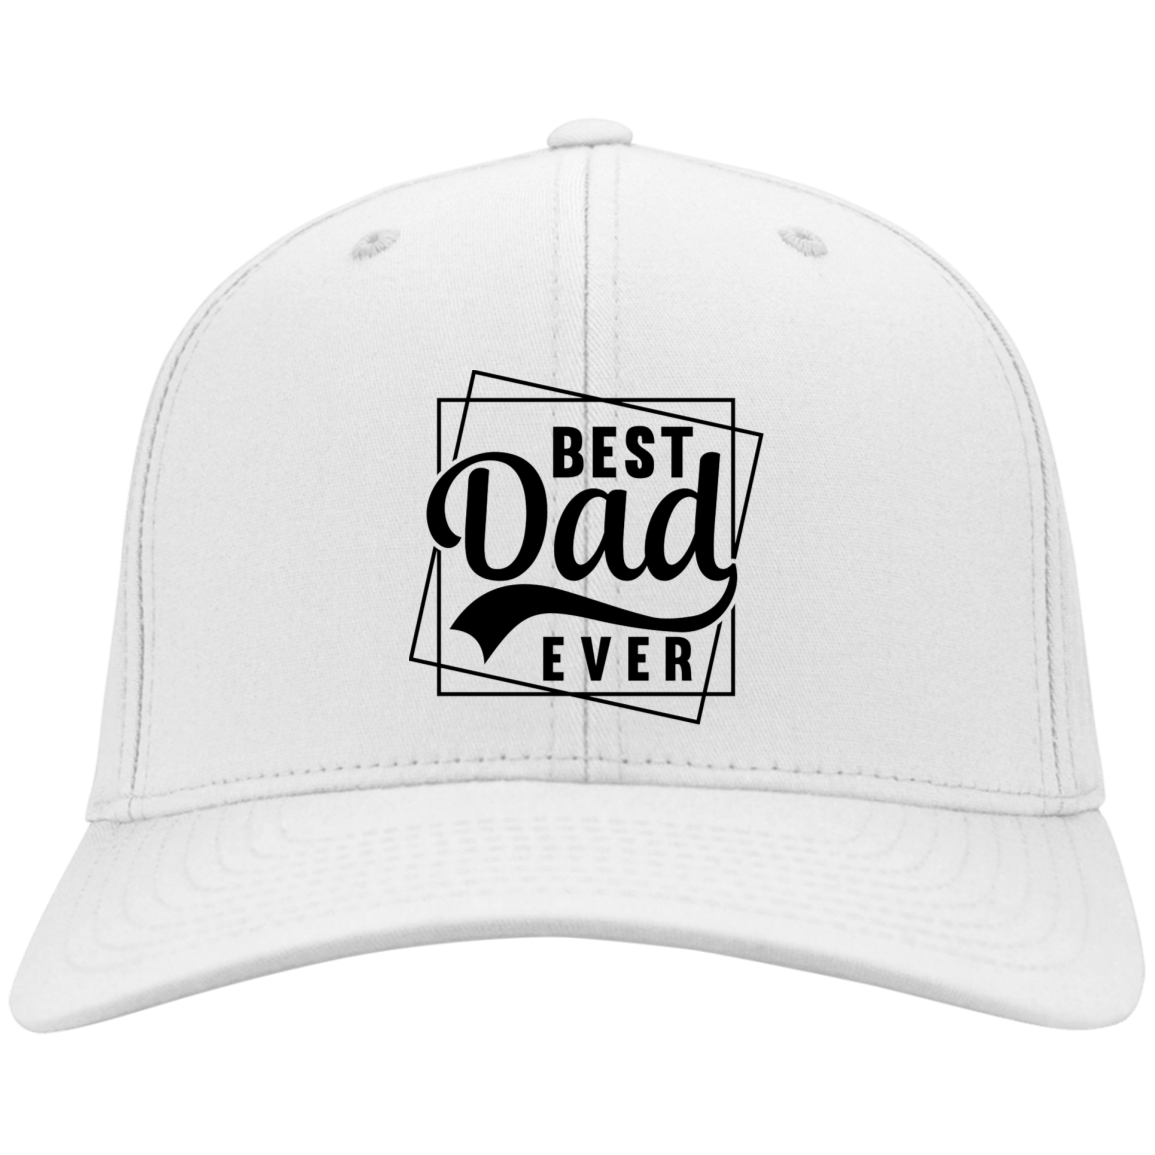 Best Dad Ever Twill Cap